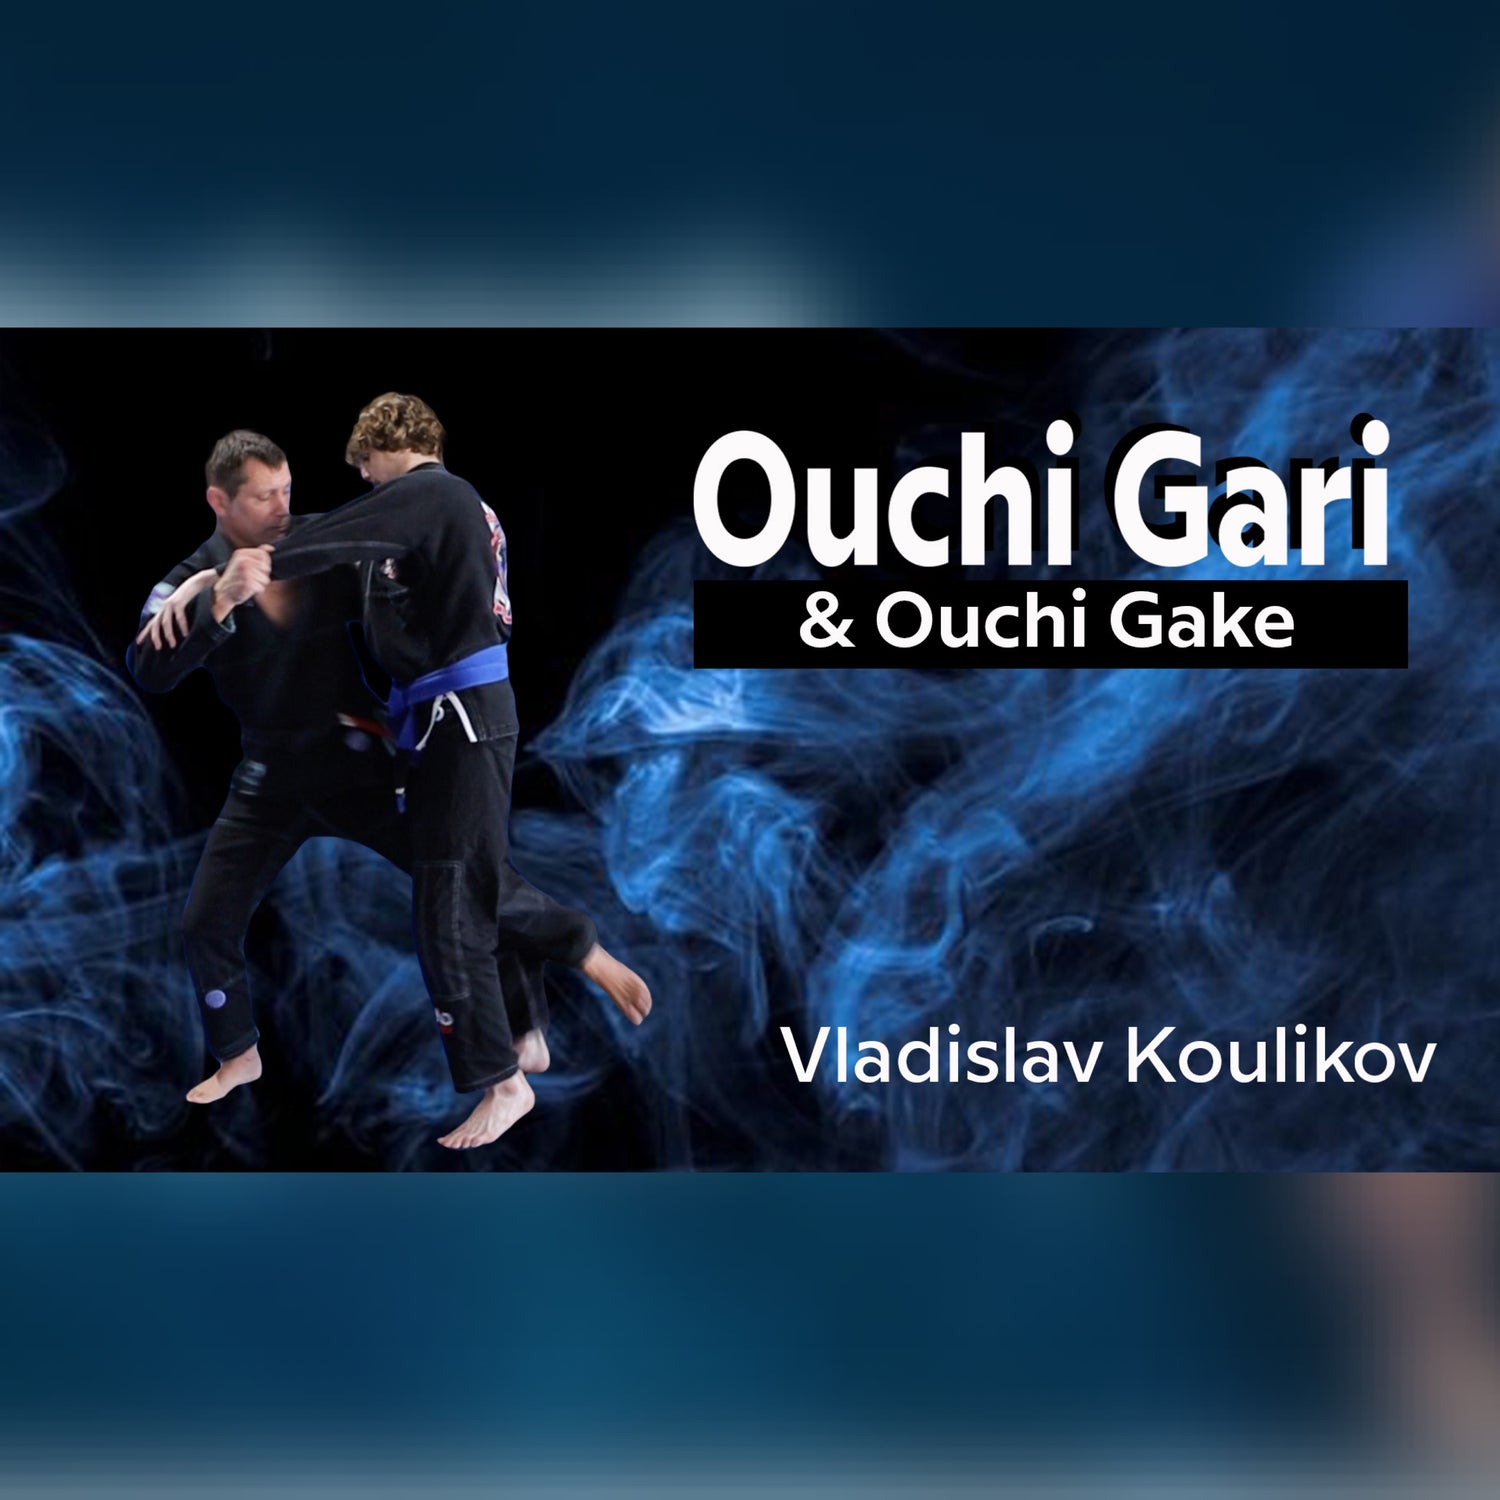 Ouchi Gari & Ouchi Gake by Vladislav Koulikov (On Demand)